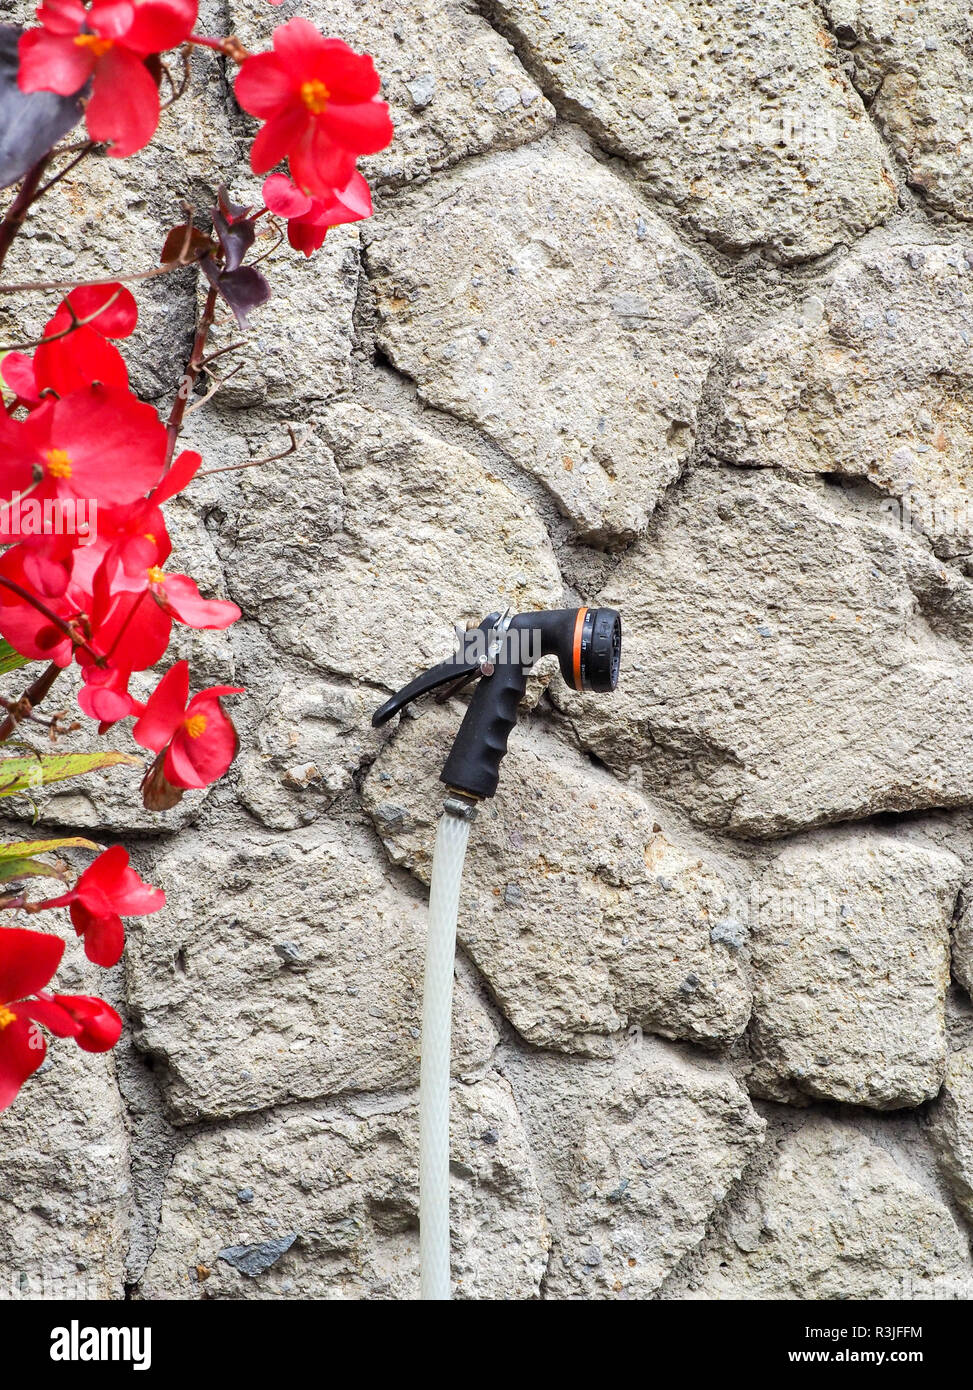 Ein Garten Wasser Spritzdüse an einem Nagel auf einer Steinmauer. Stockfoto